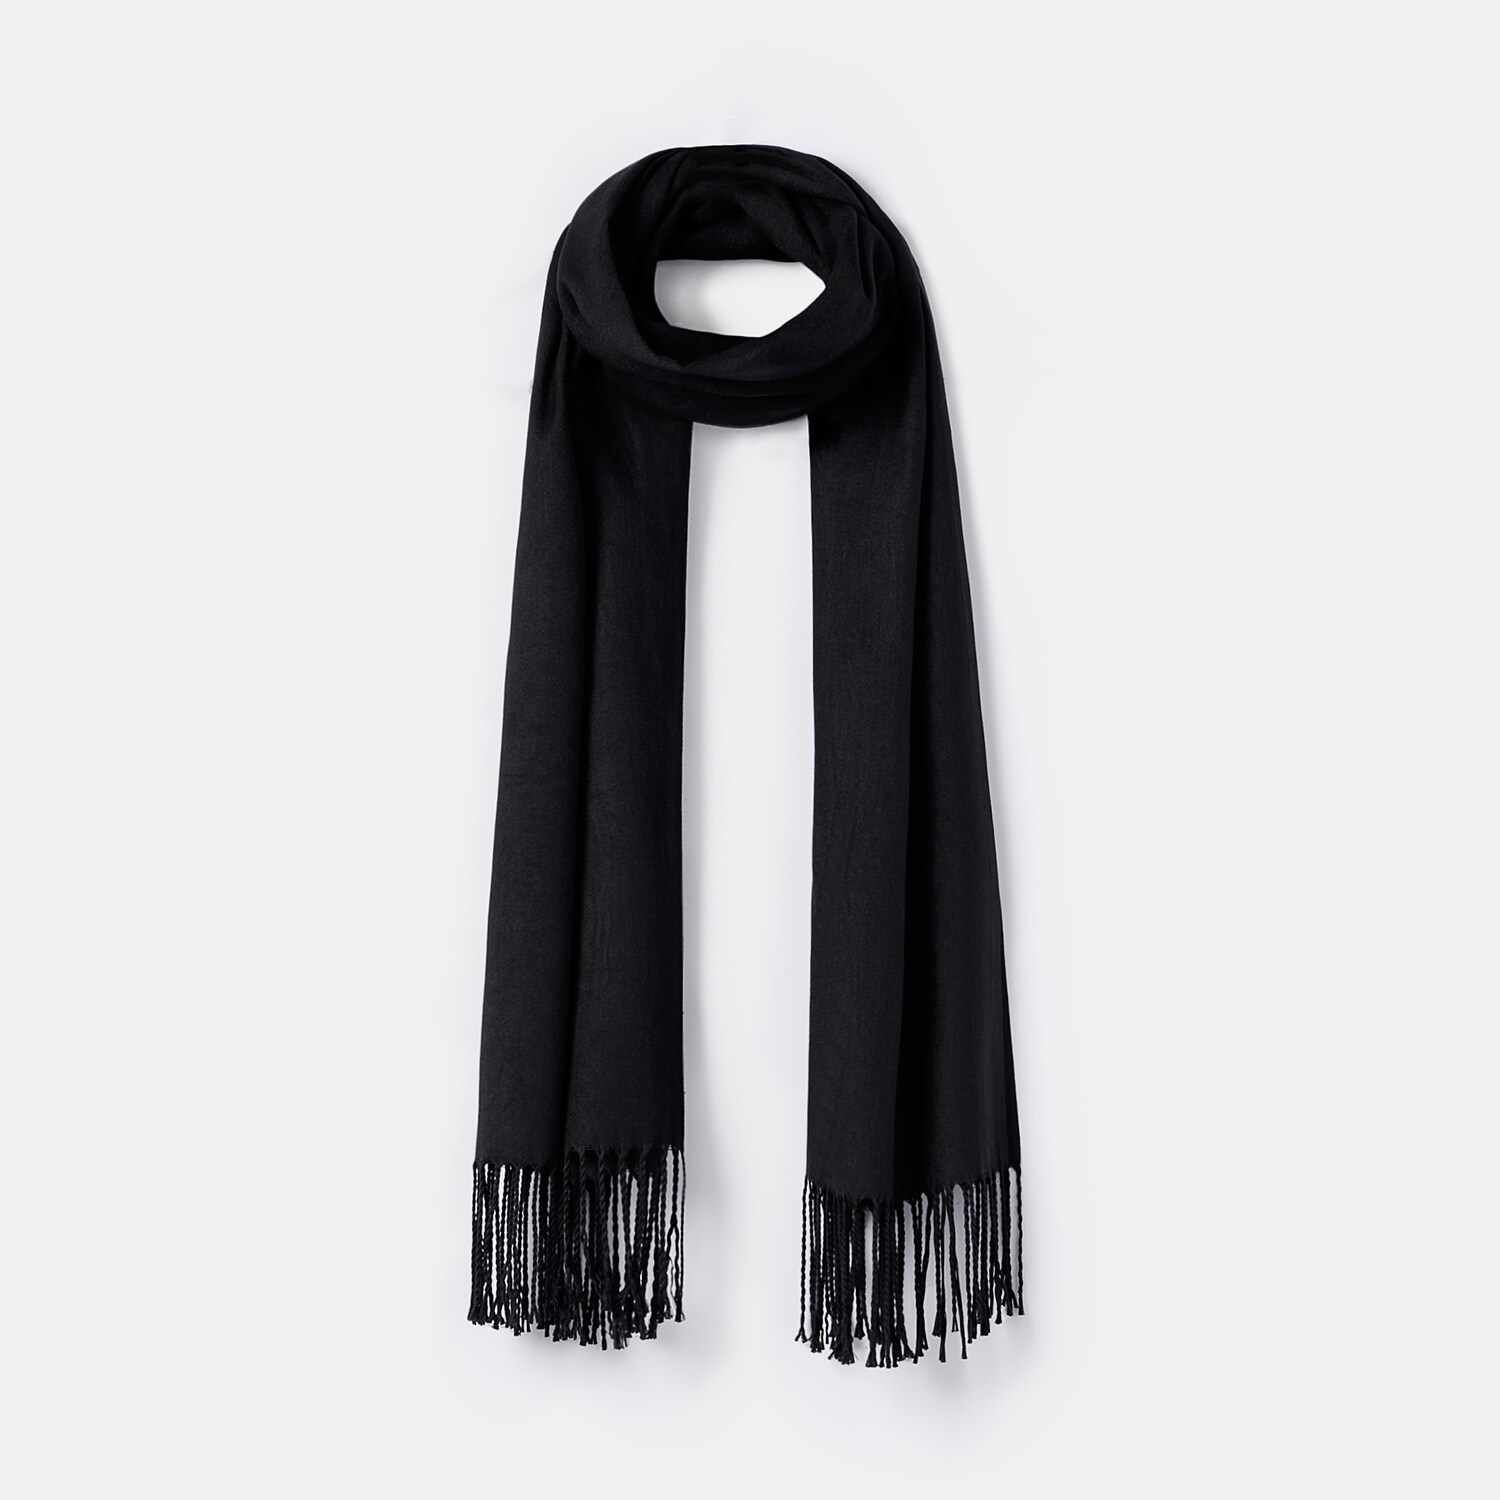 Mohito – Fular uni, cu franjuri – Negru Accessories > scarves 2023-09-24